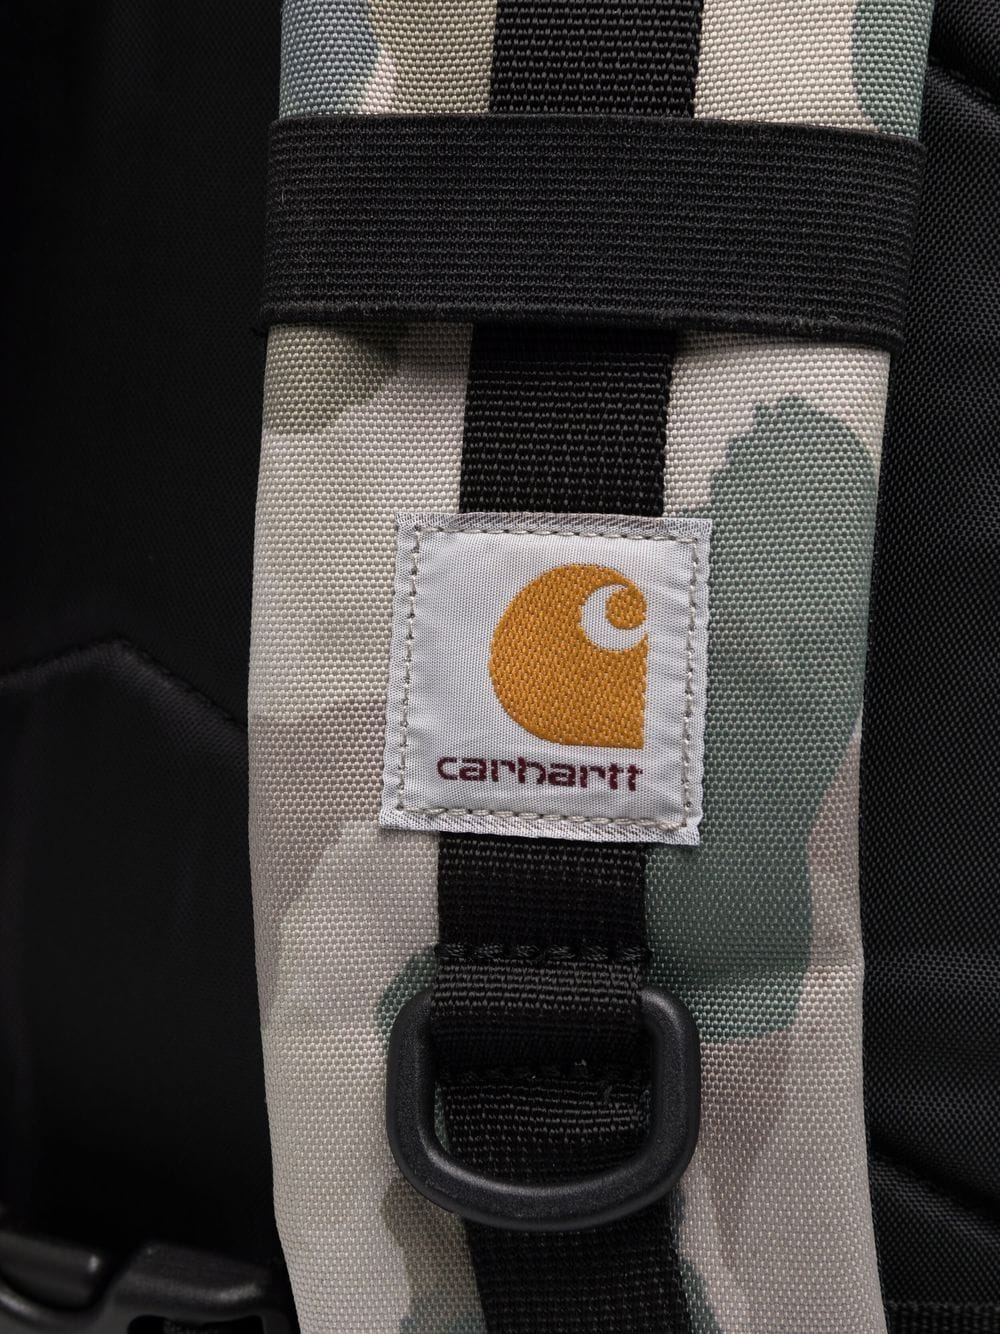 фото Carhartt wip рюкзак с камуфляжным принтом